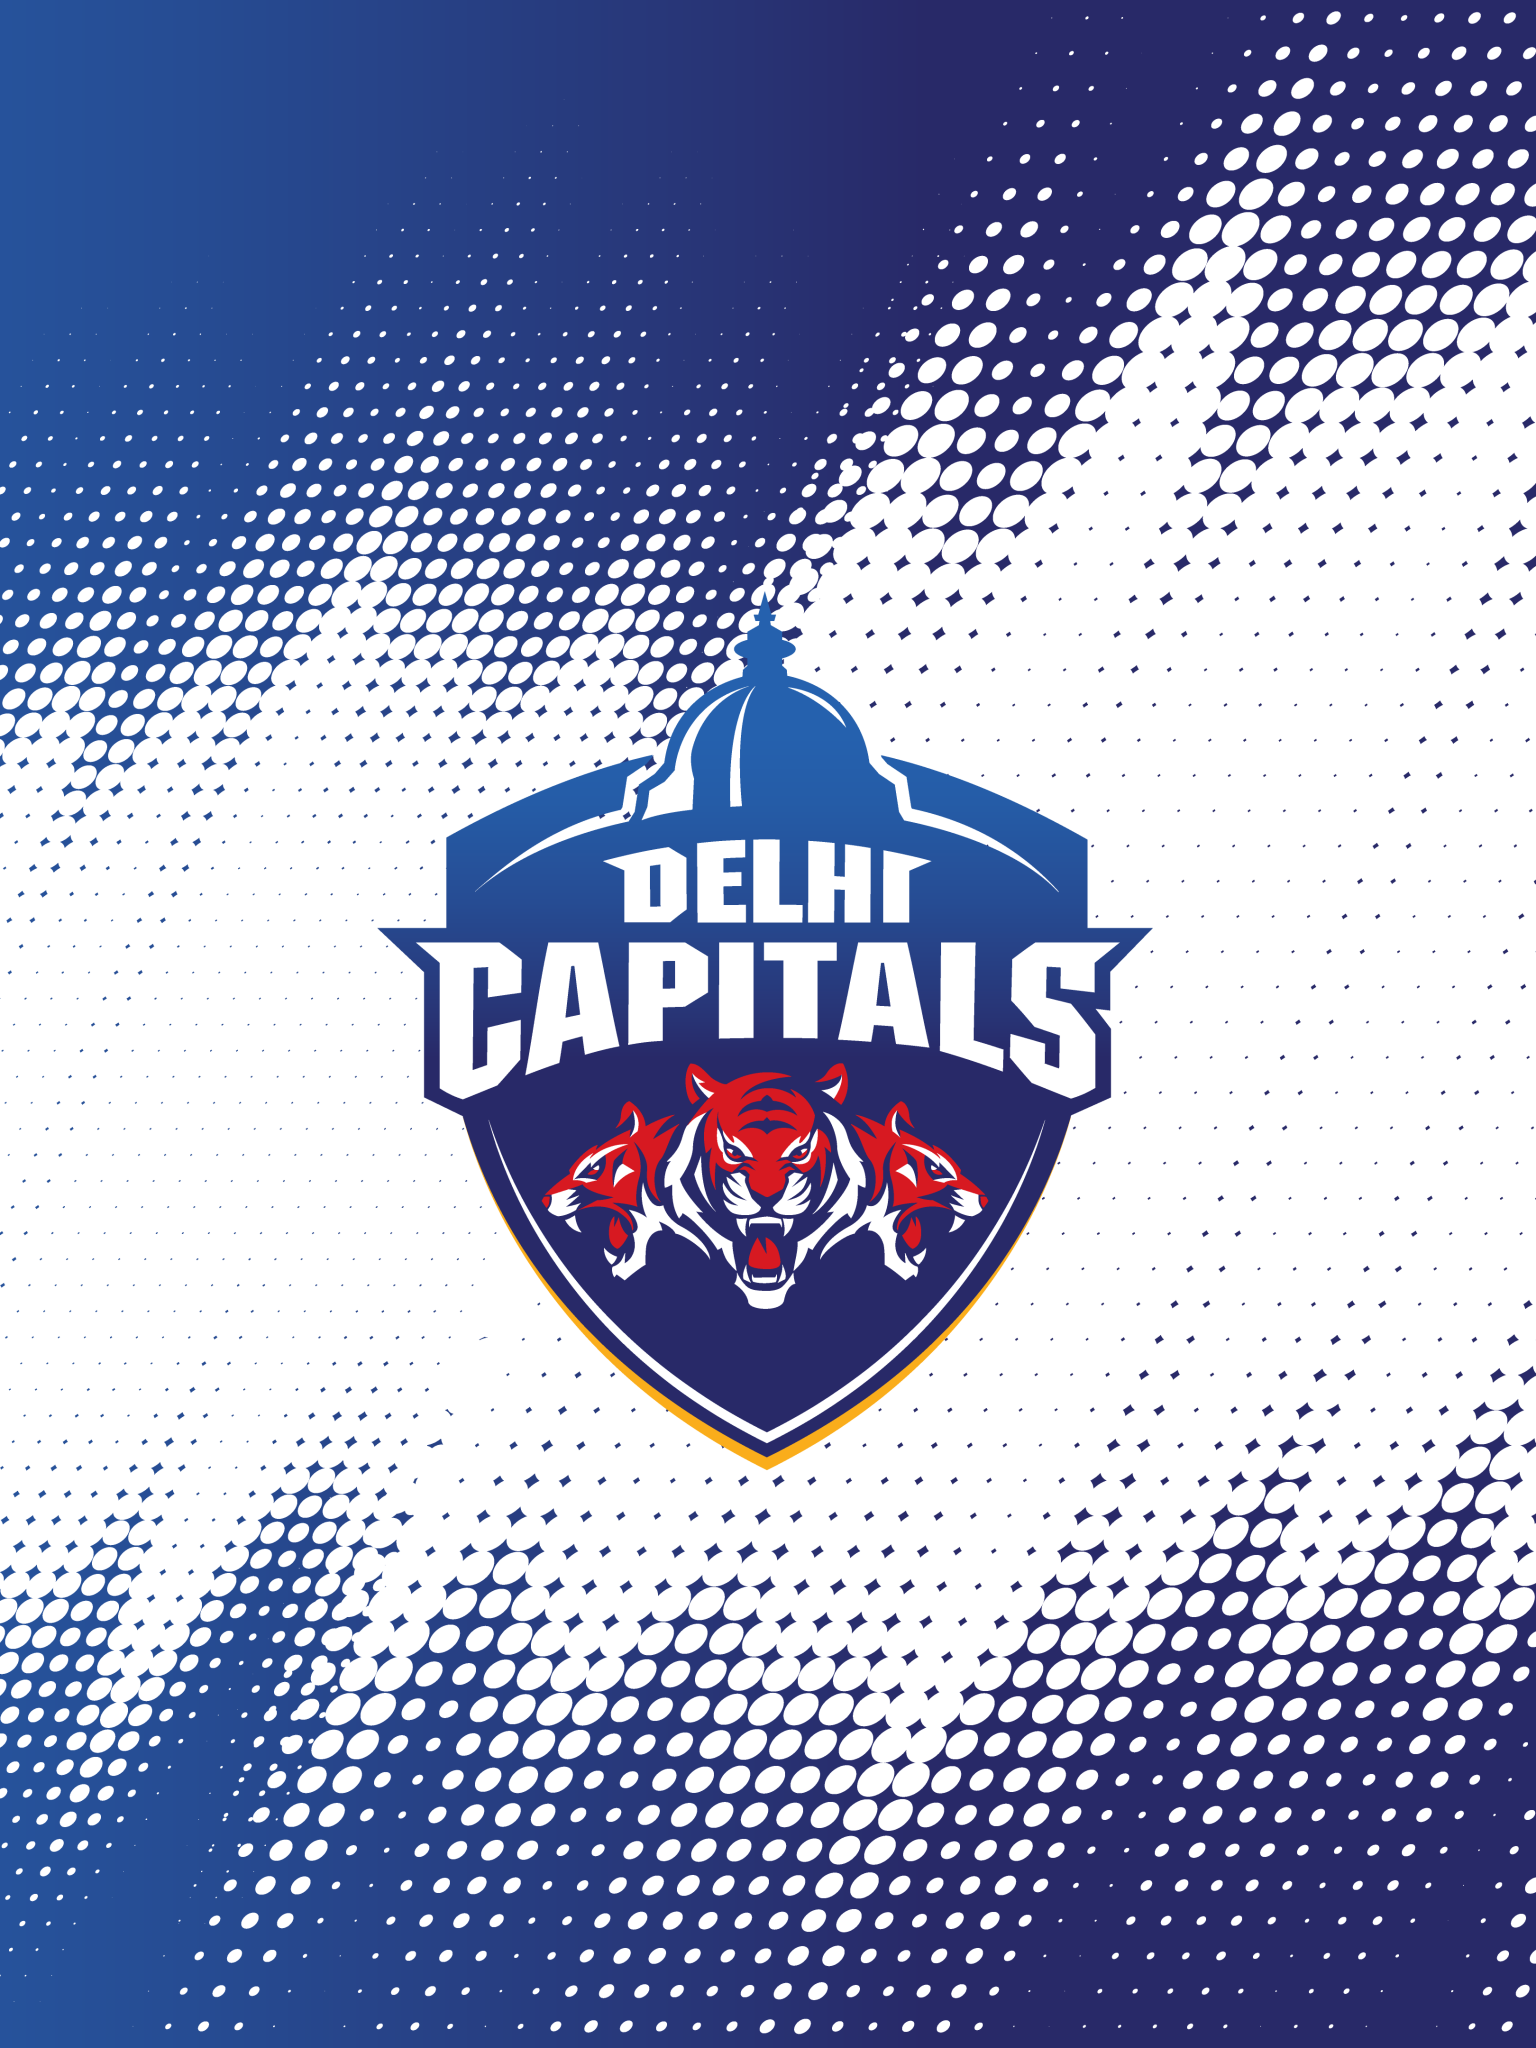 Delhi Capitals Wallpaper 4K, Indian Premier League, IPL, IPL Cricket, Sports